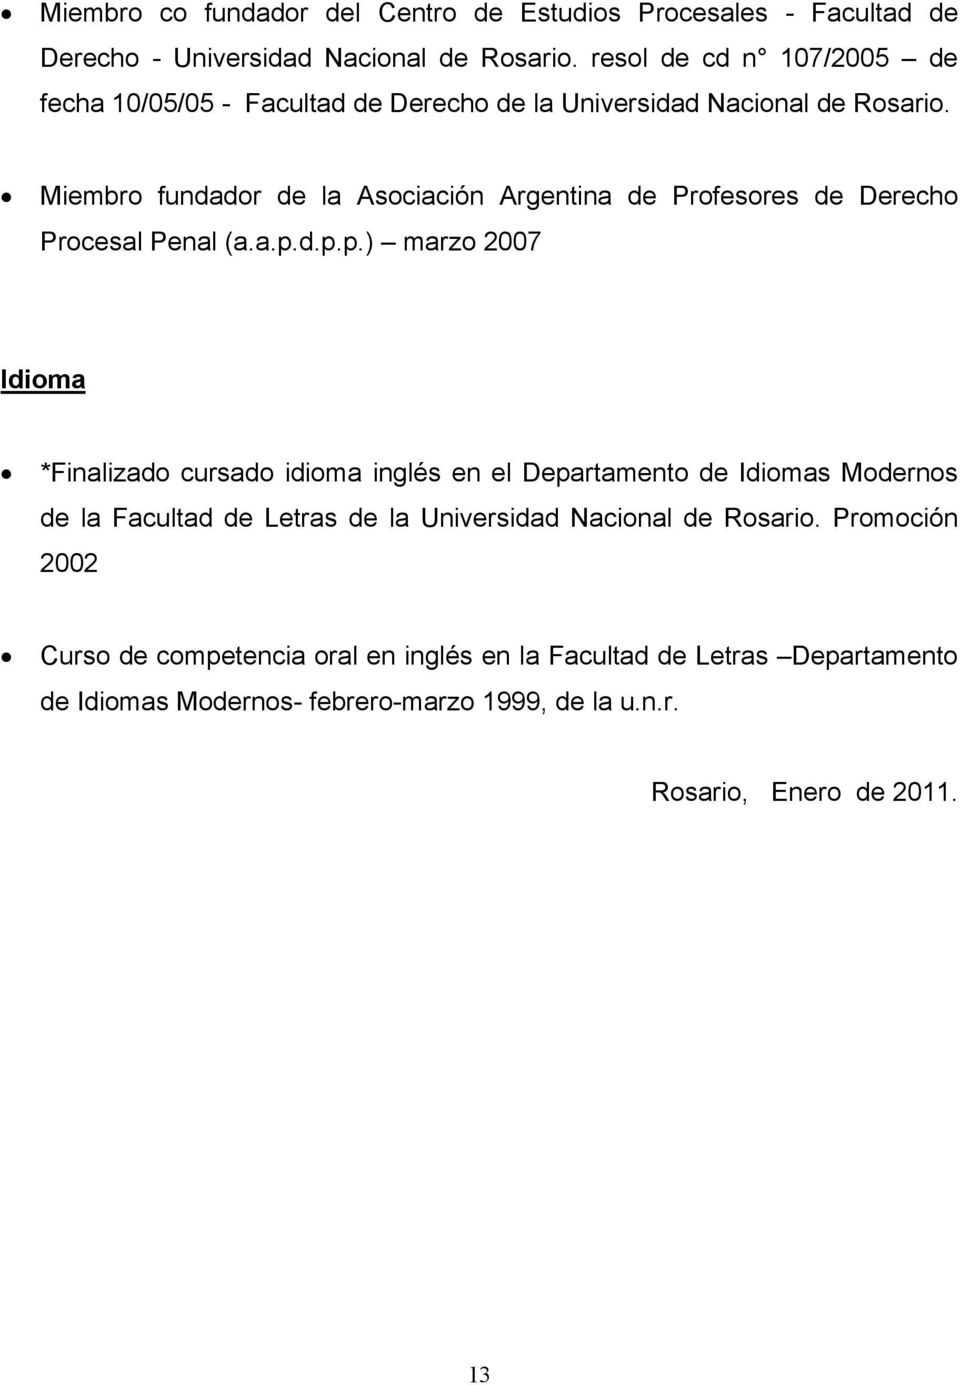 Miembro fundador de la Asociación Argentina de Profesores de Derecho Procesal Penal (a.a.p.